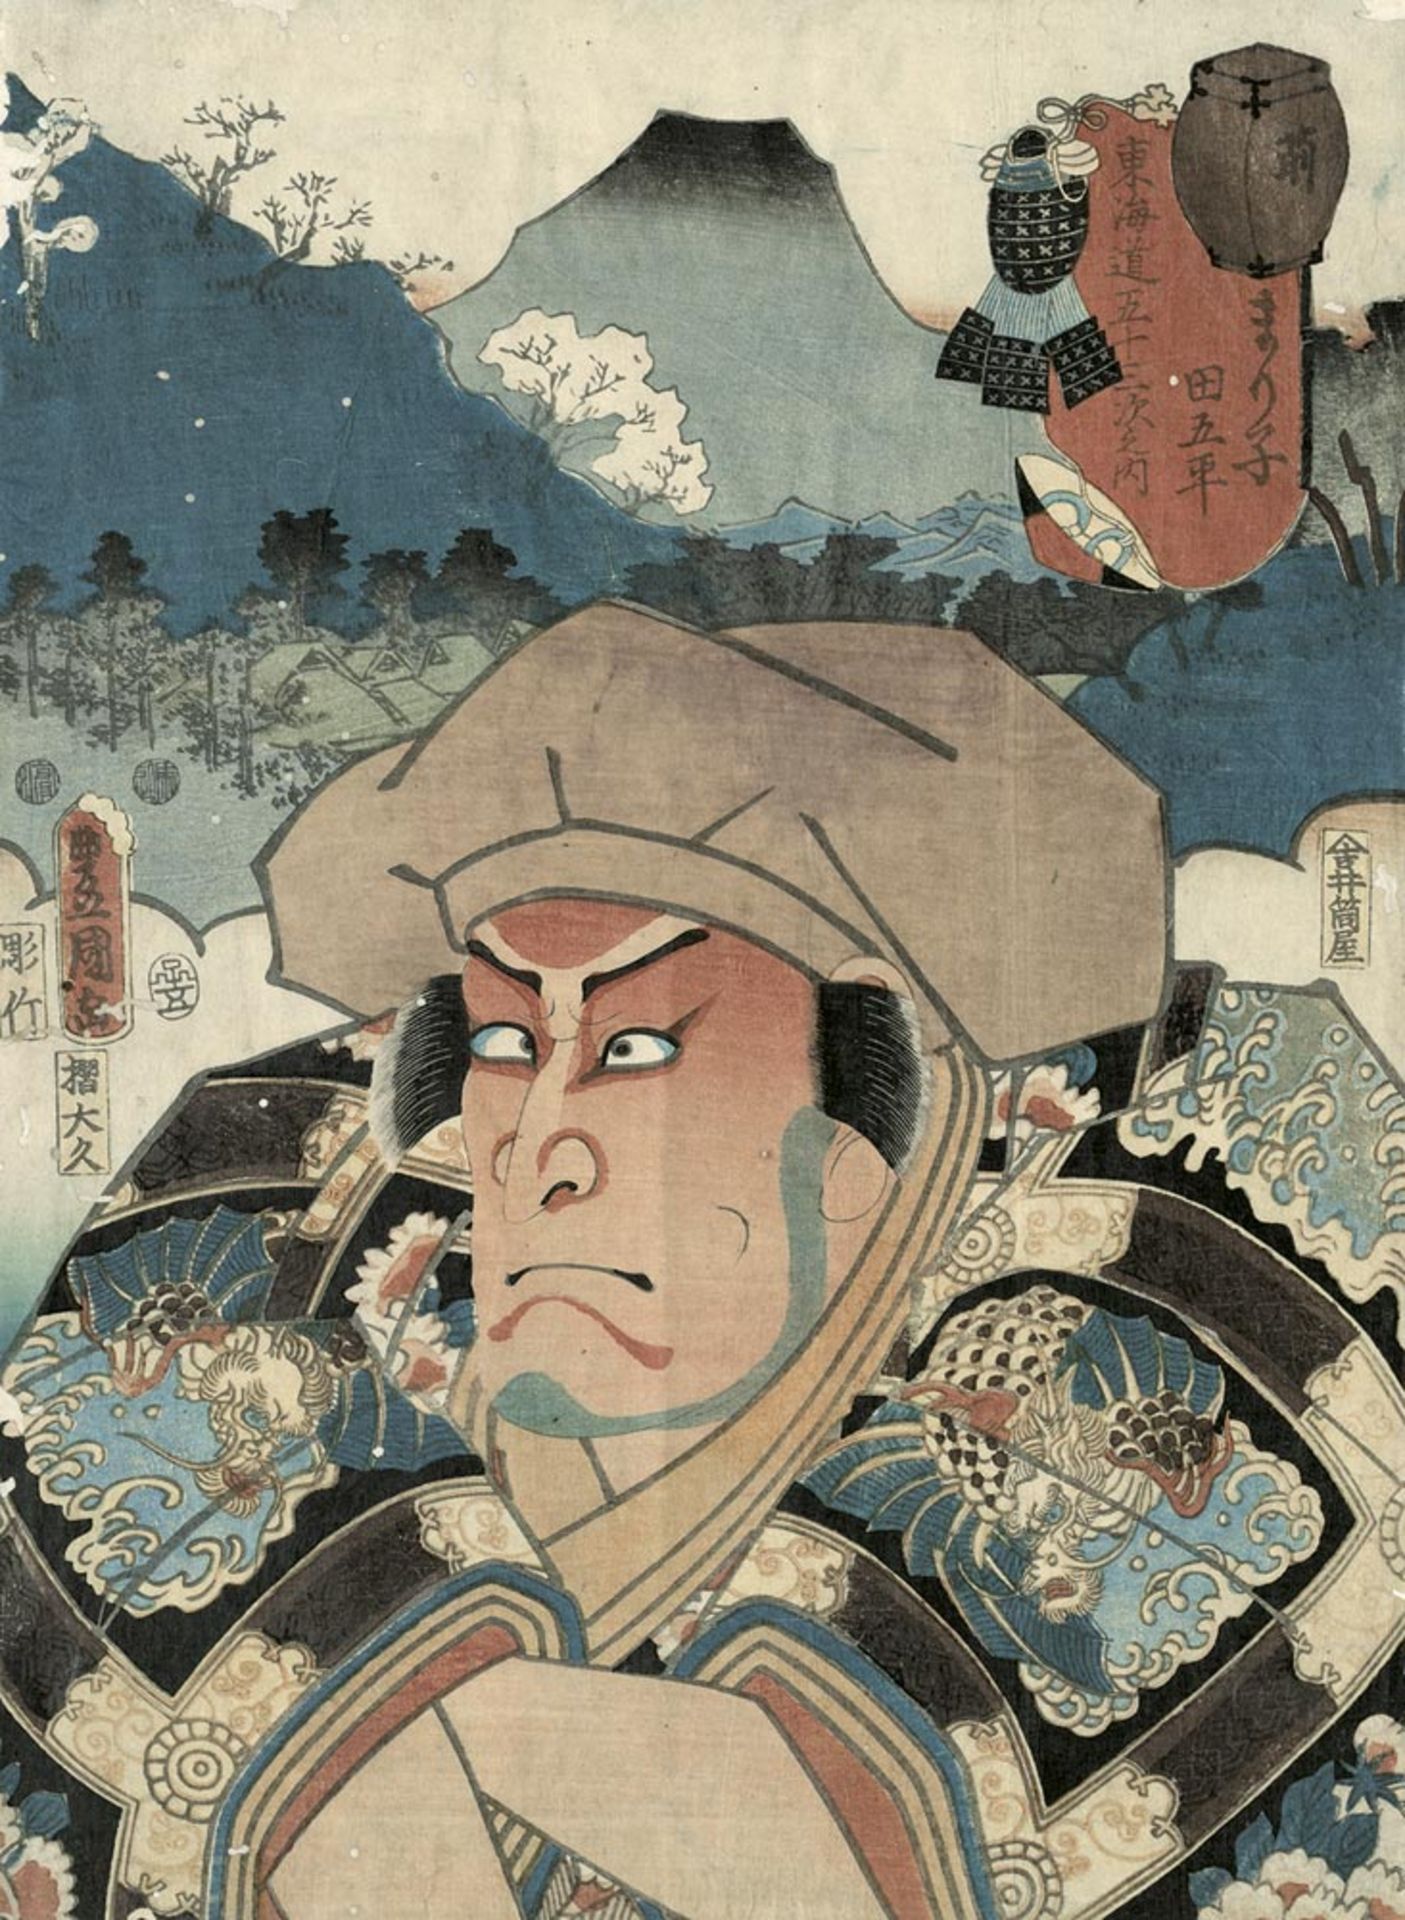 Japanische Farbholzschnitte: 2 Blätter, wohl von Kunichika Toyohara und Toyokuni III.